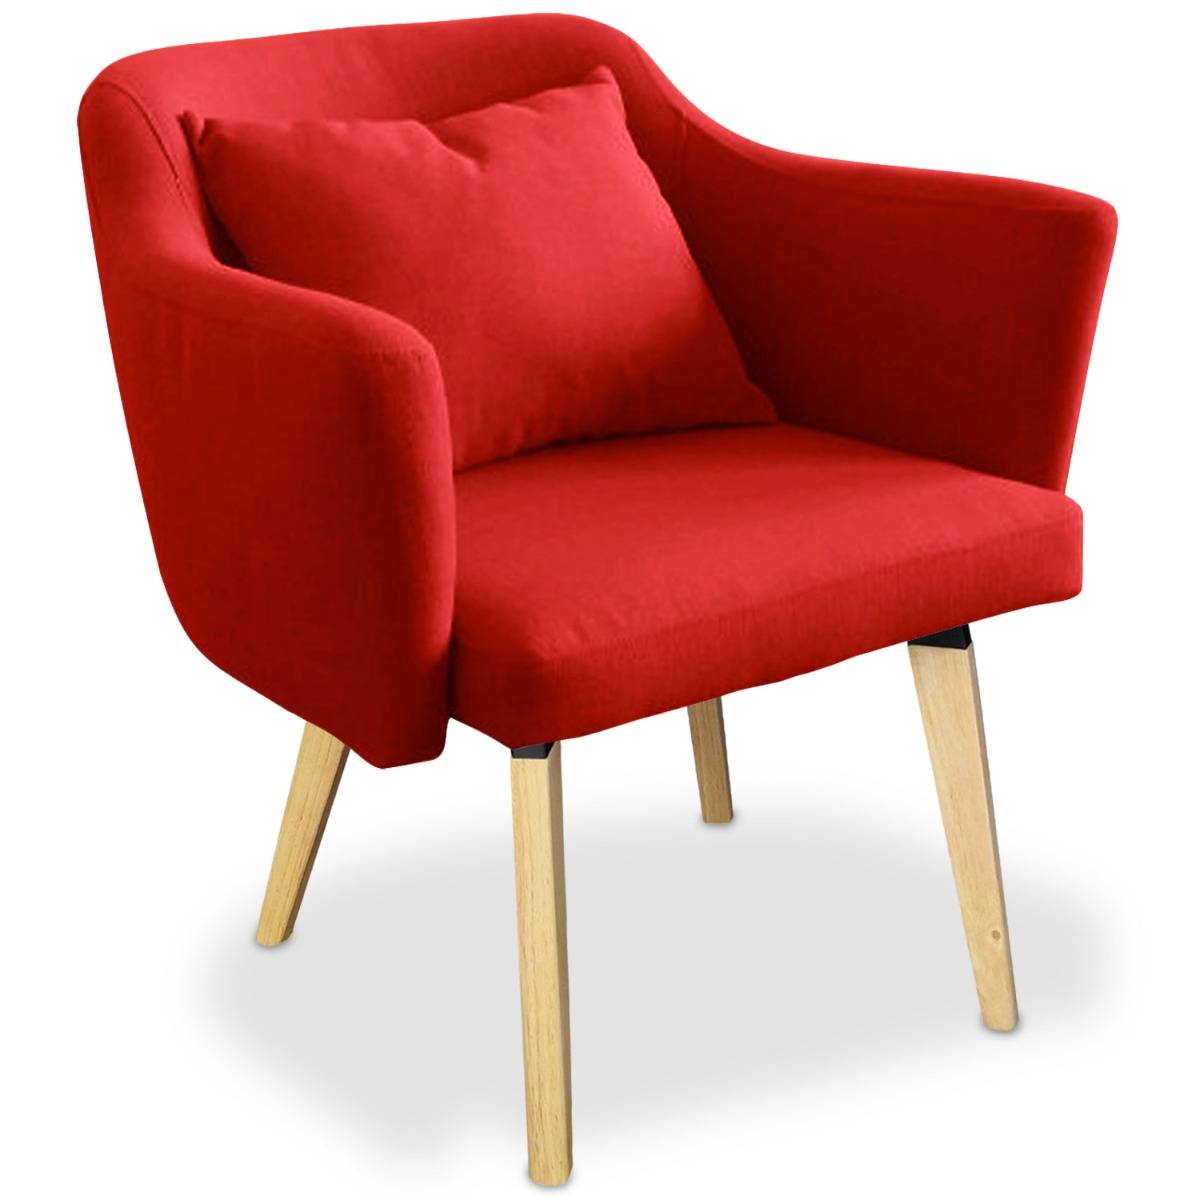 voor eeuwig Attent Welkom Scandinavische Dantes stoel / fauteuil rode stof